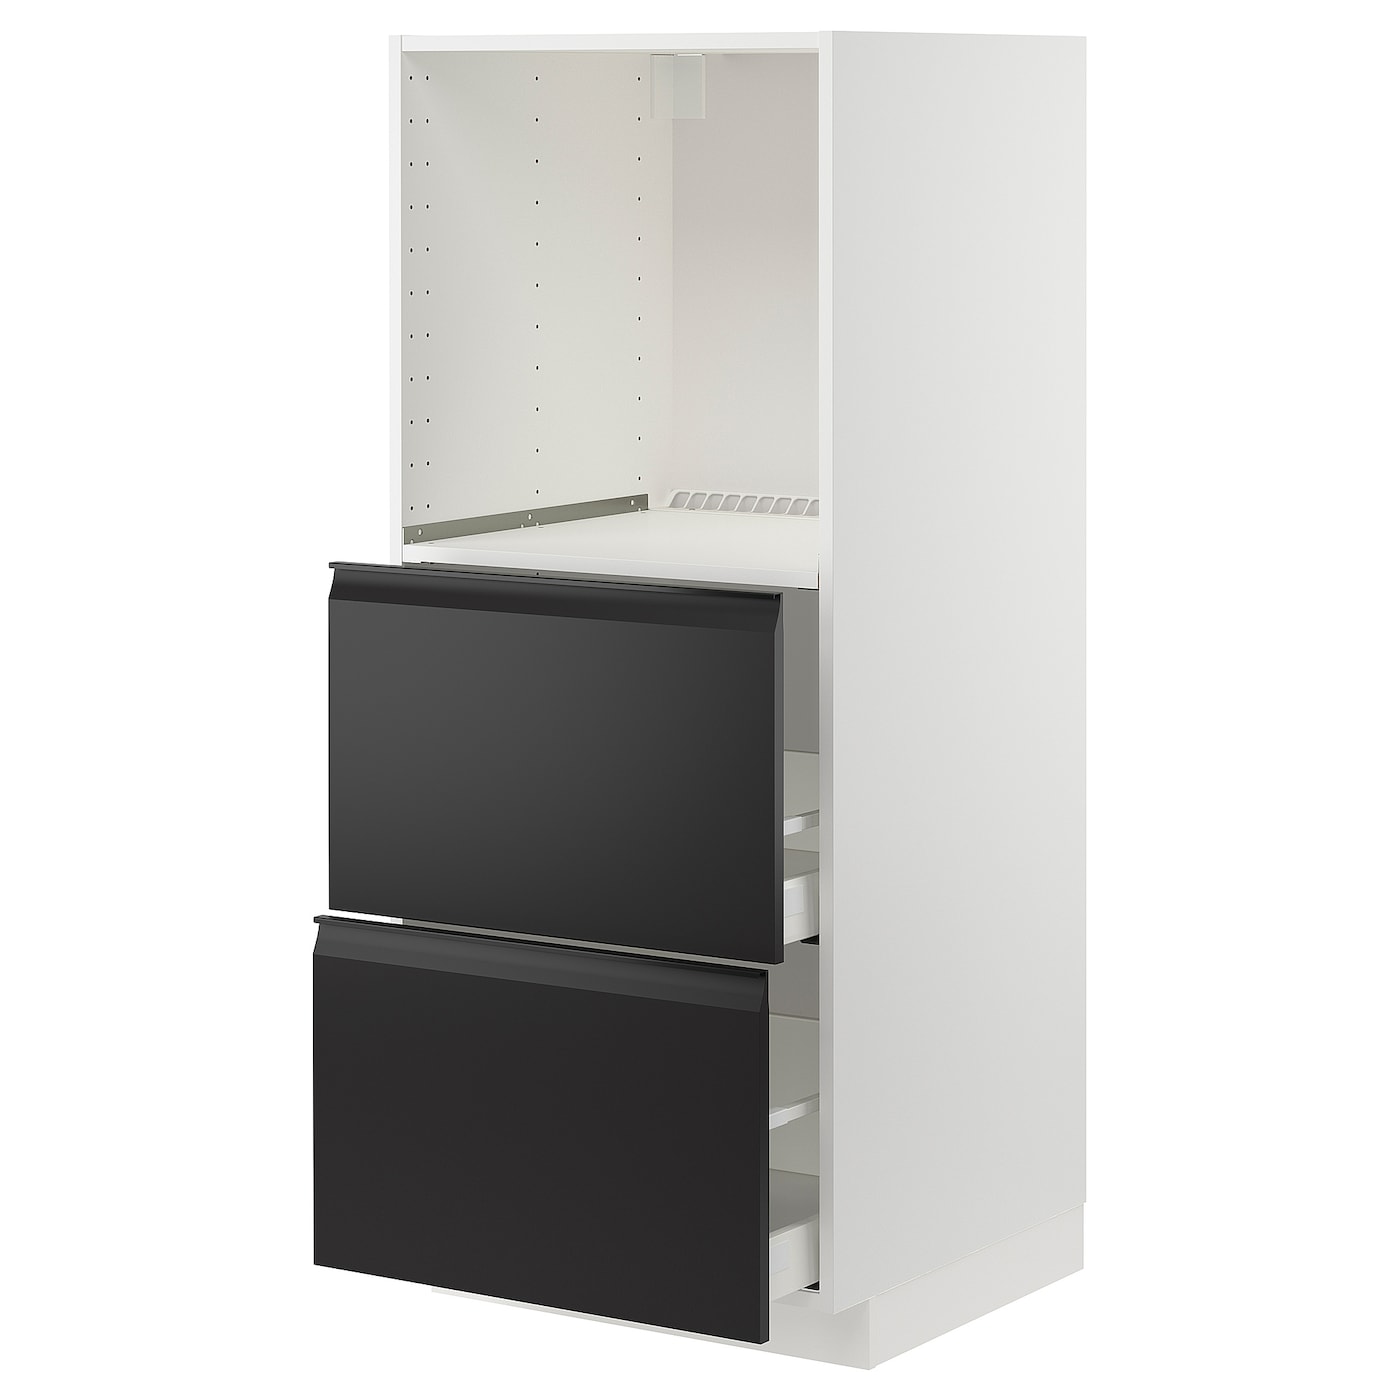 Напольный шкаф  - IKEA METOD MAXIMERA, 148x61,6x60см, белый/черный, МЕТОД МАКСИМЕРА ИКЕА